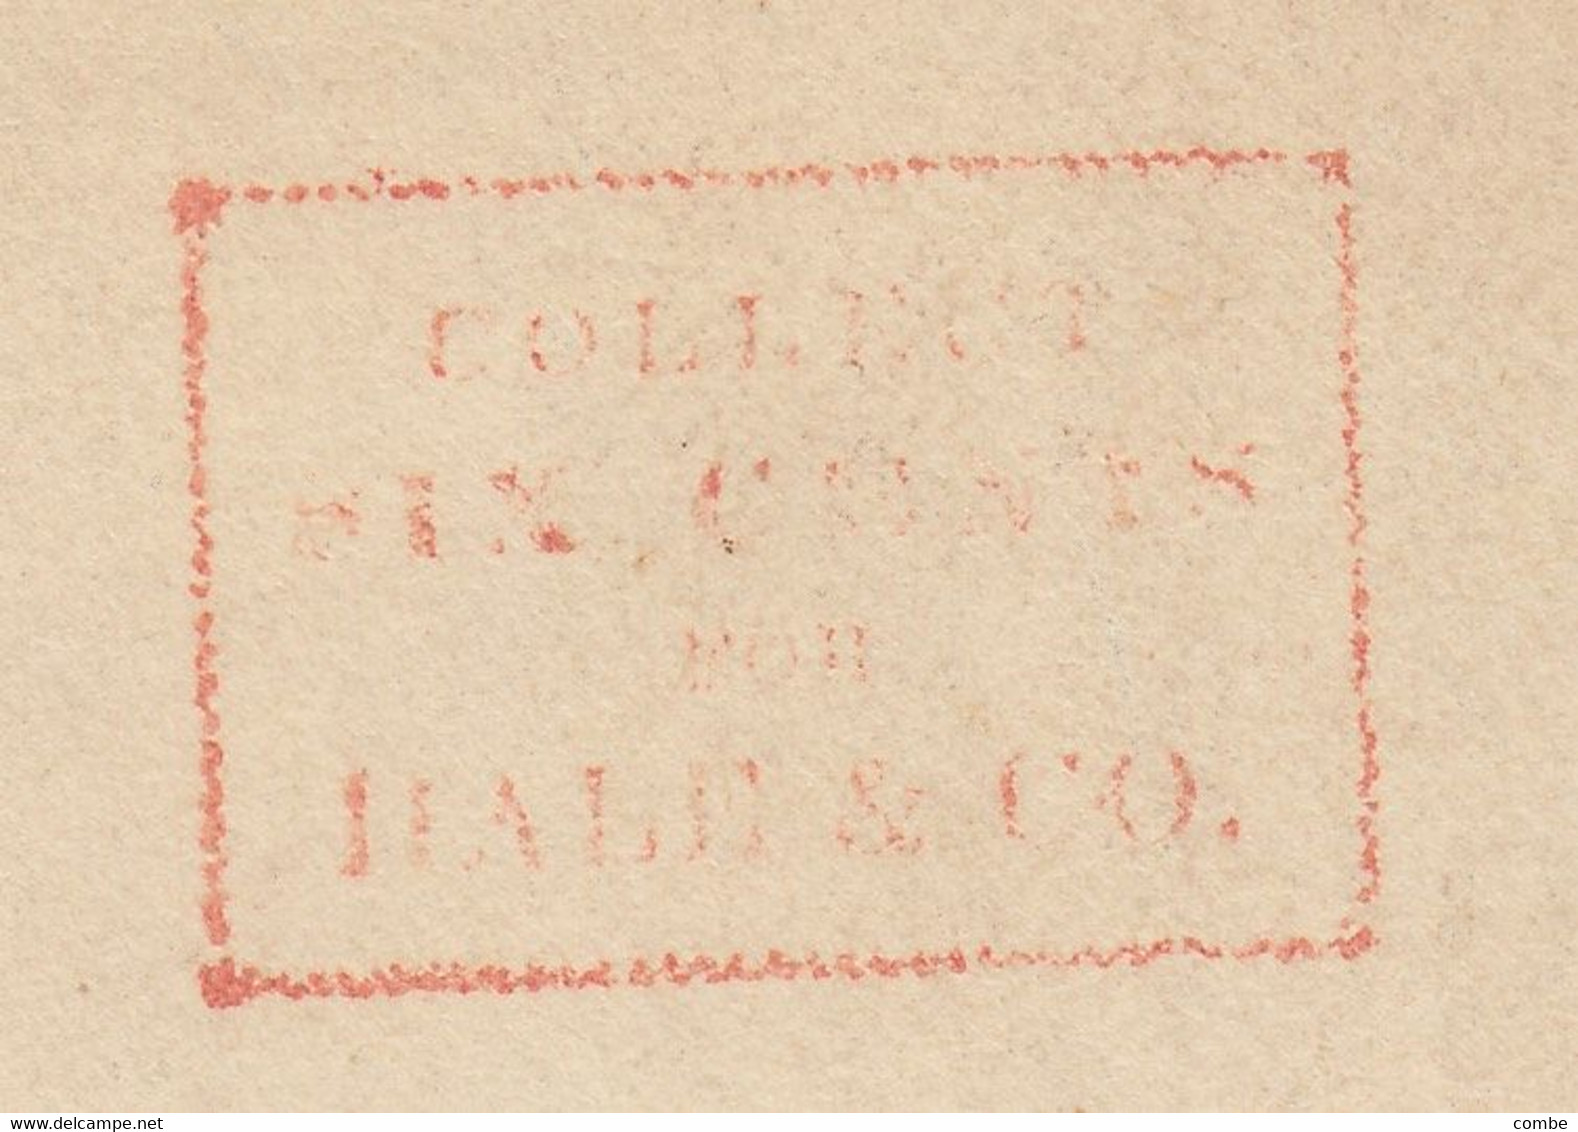 COVER. RED CANCEL  "COLLECT SIX CENTS FOR HALE & C°". NEW-YORK. NO TEXT      / 2 - …-1845 Préphilatélie